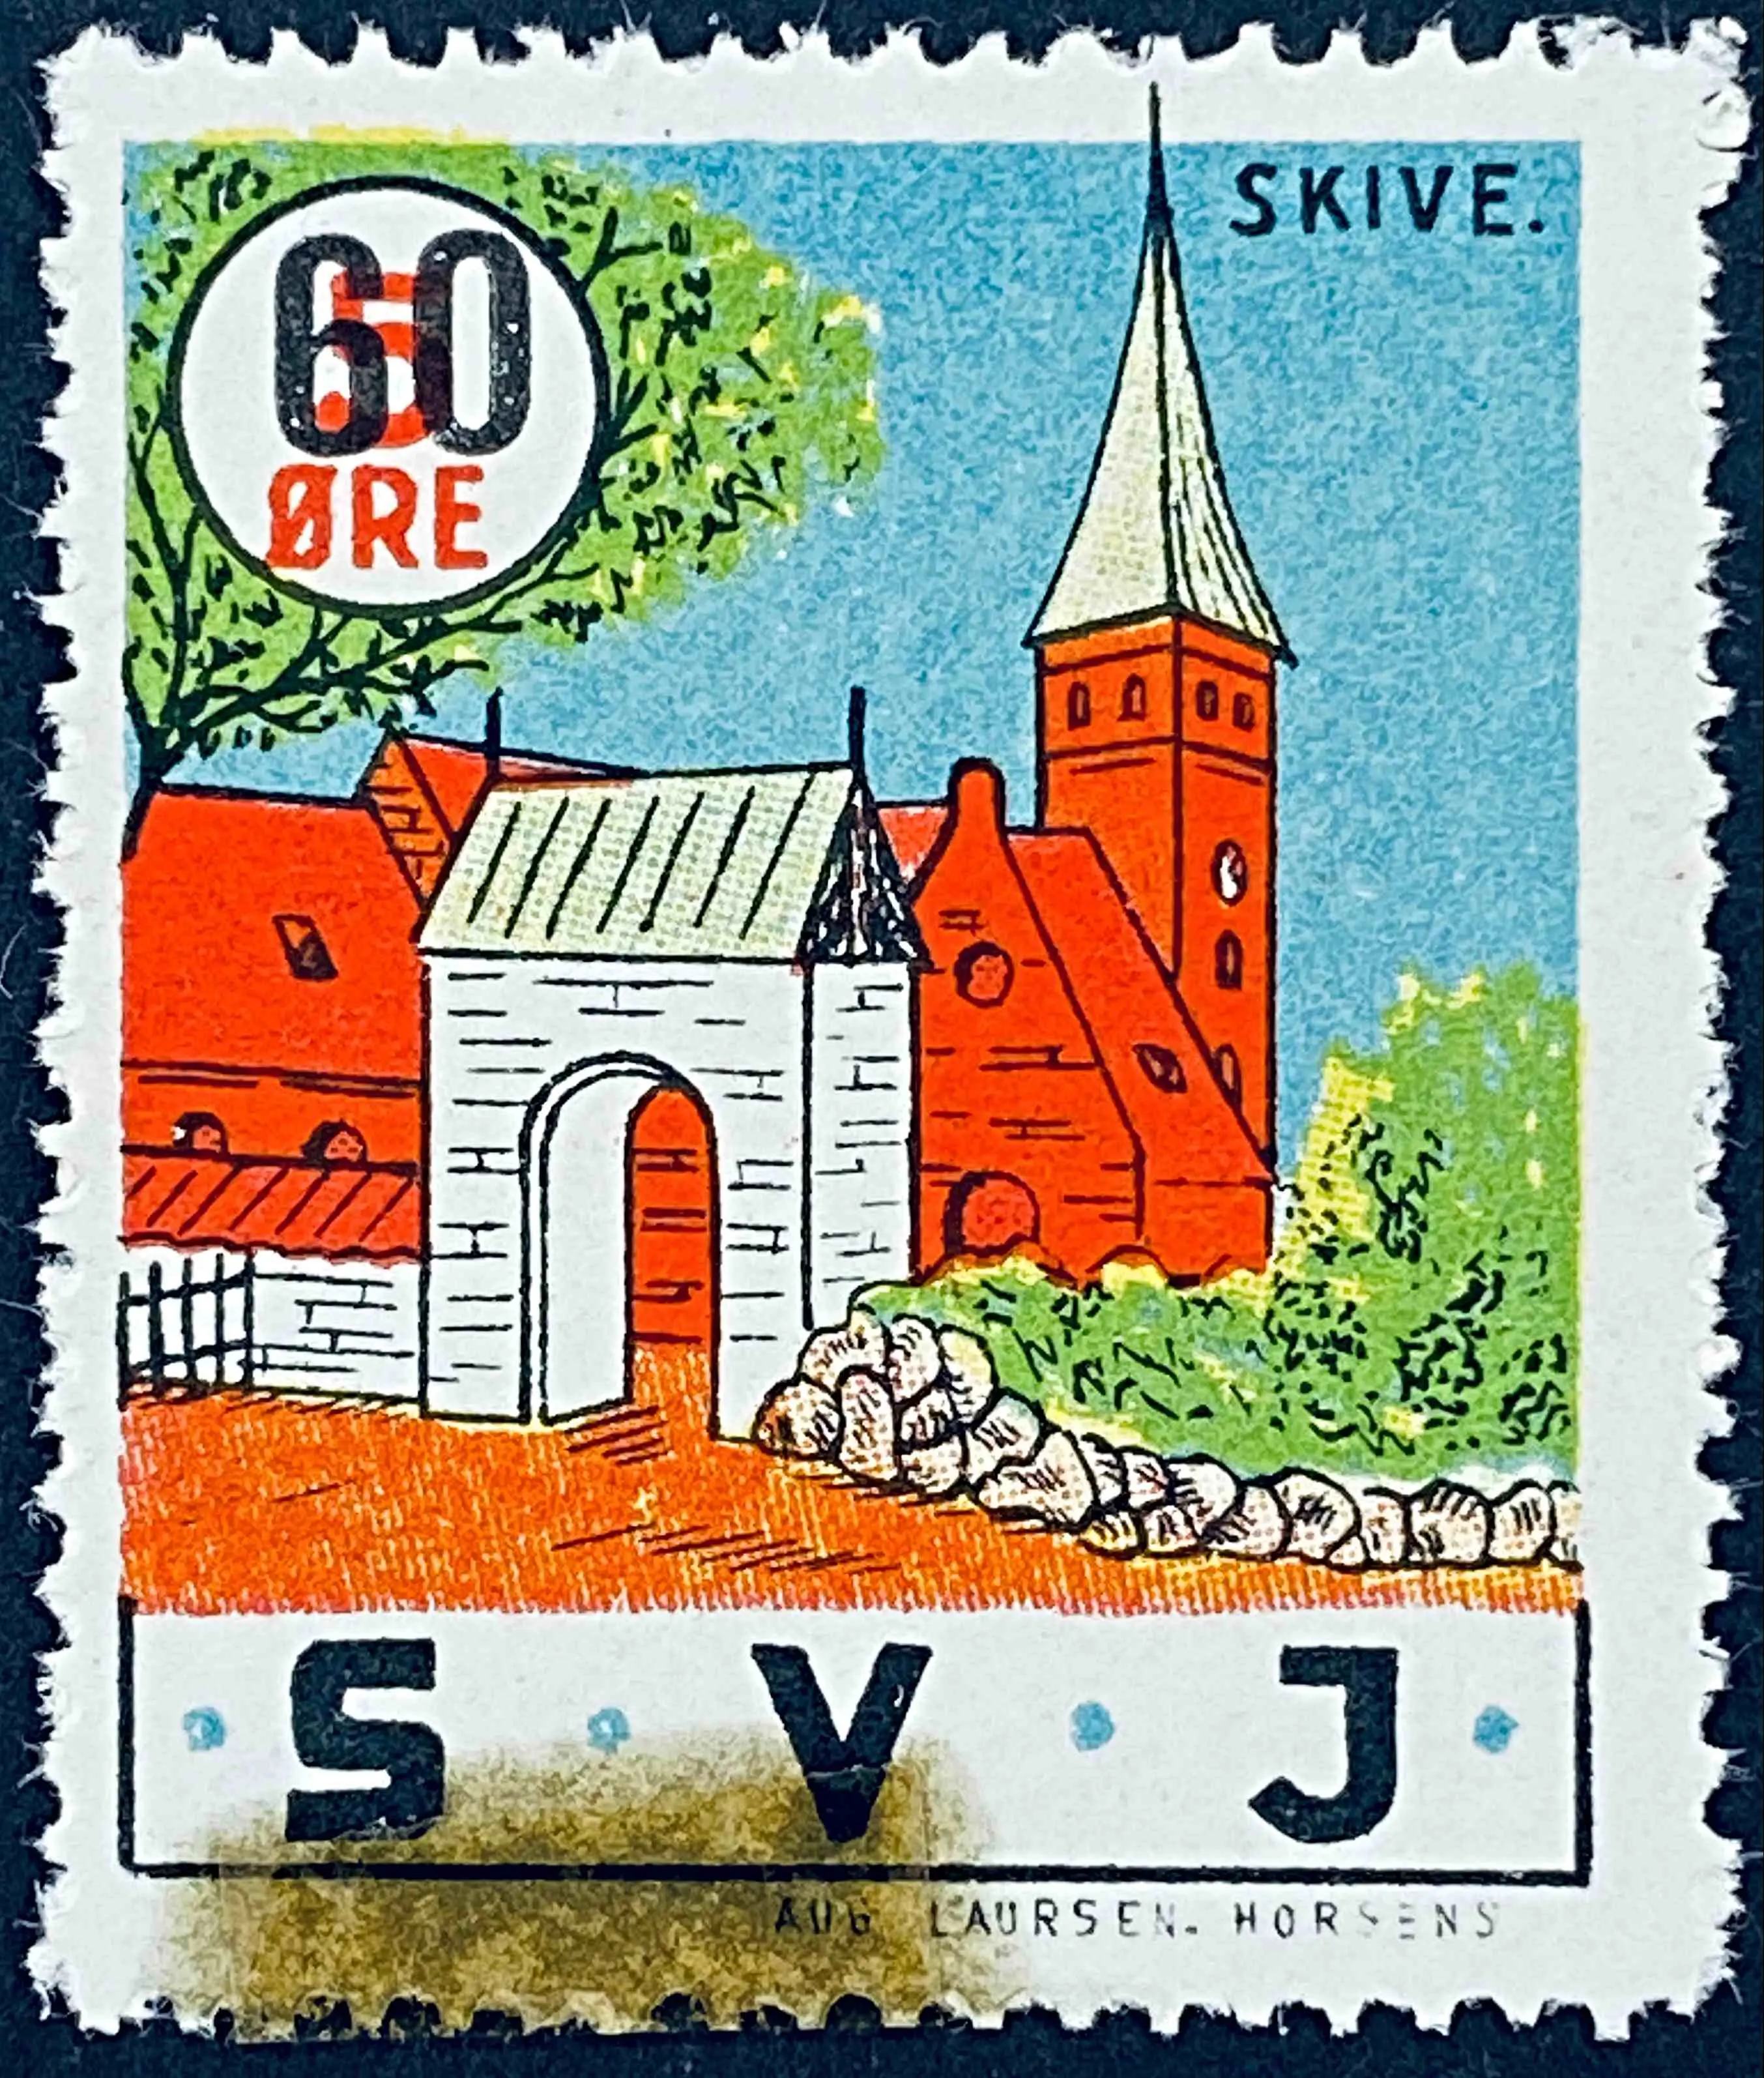 SVJ 15A - Provisorium (overtryk) 60 Øre sort bogtryk på 5 Øre Motiv: Skive kirke bygget 1896-1898 - Flerfarvet - trykkeri: Aug. Laursen: Horsens.